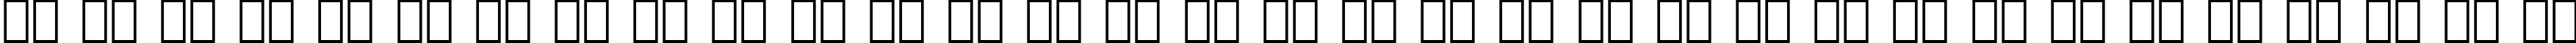 Пример написания русского алфавита шрифтом Normande BT